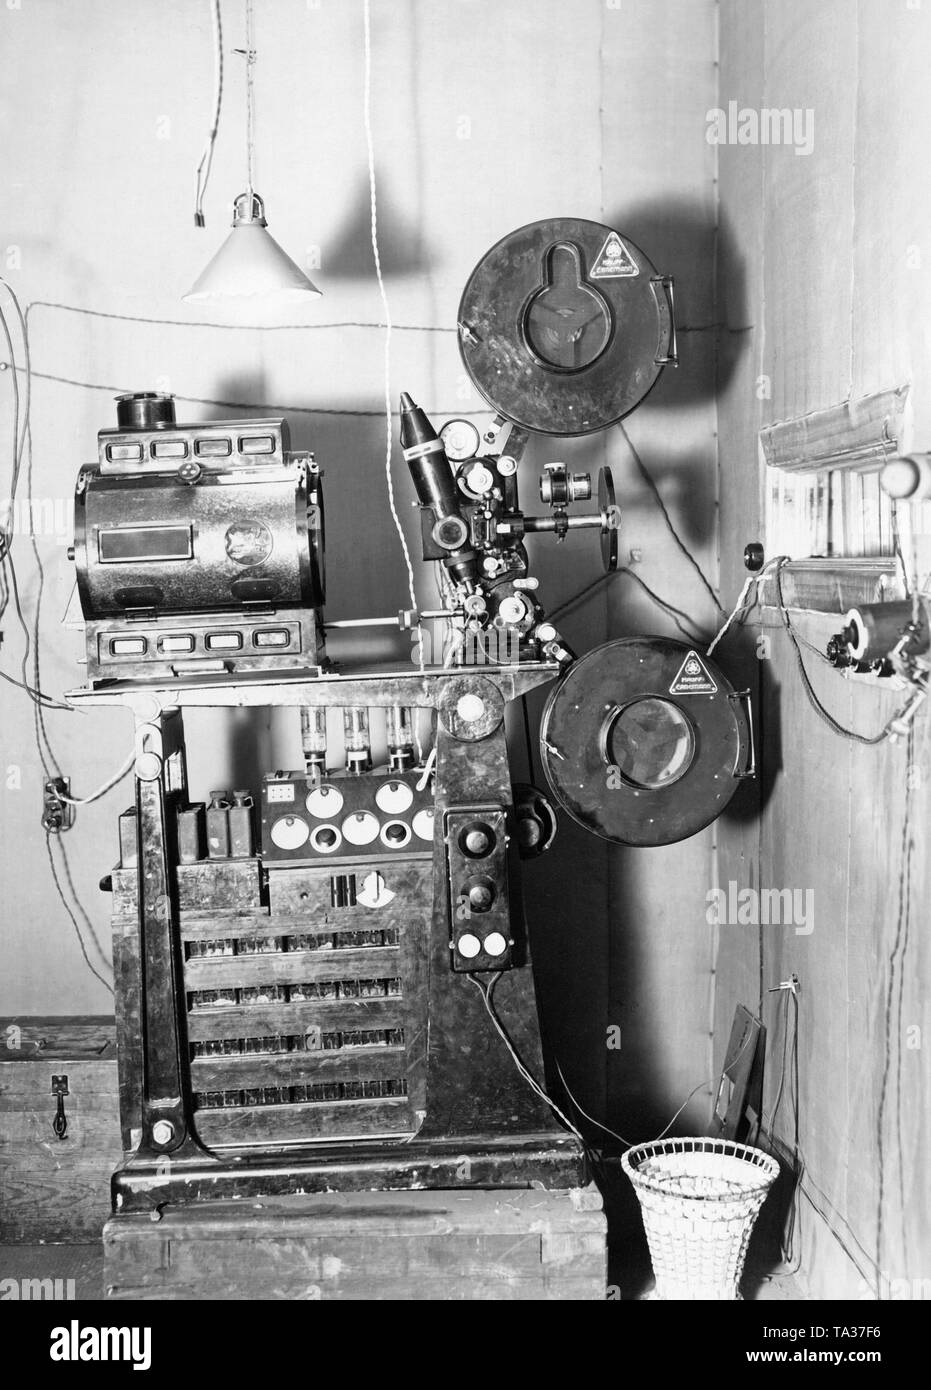 Questo suono proiettore film consisteva di rulli girevoli per le filmine, un proiettore ed un record giocatore. Foto non datata intorno al 1920s. Foto Stock